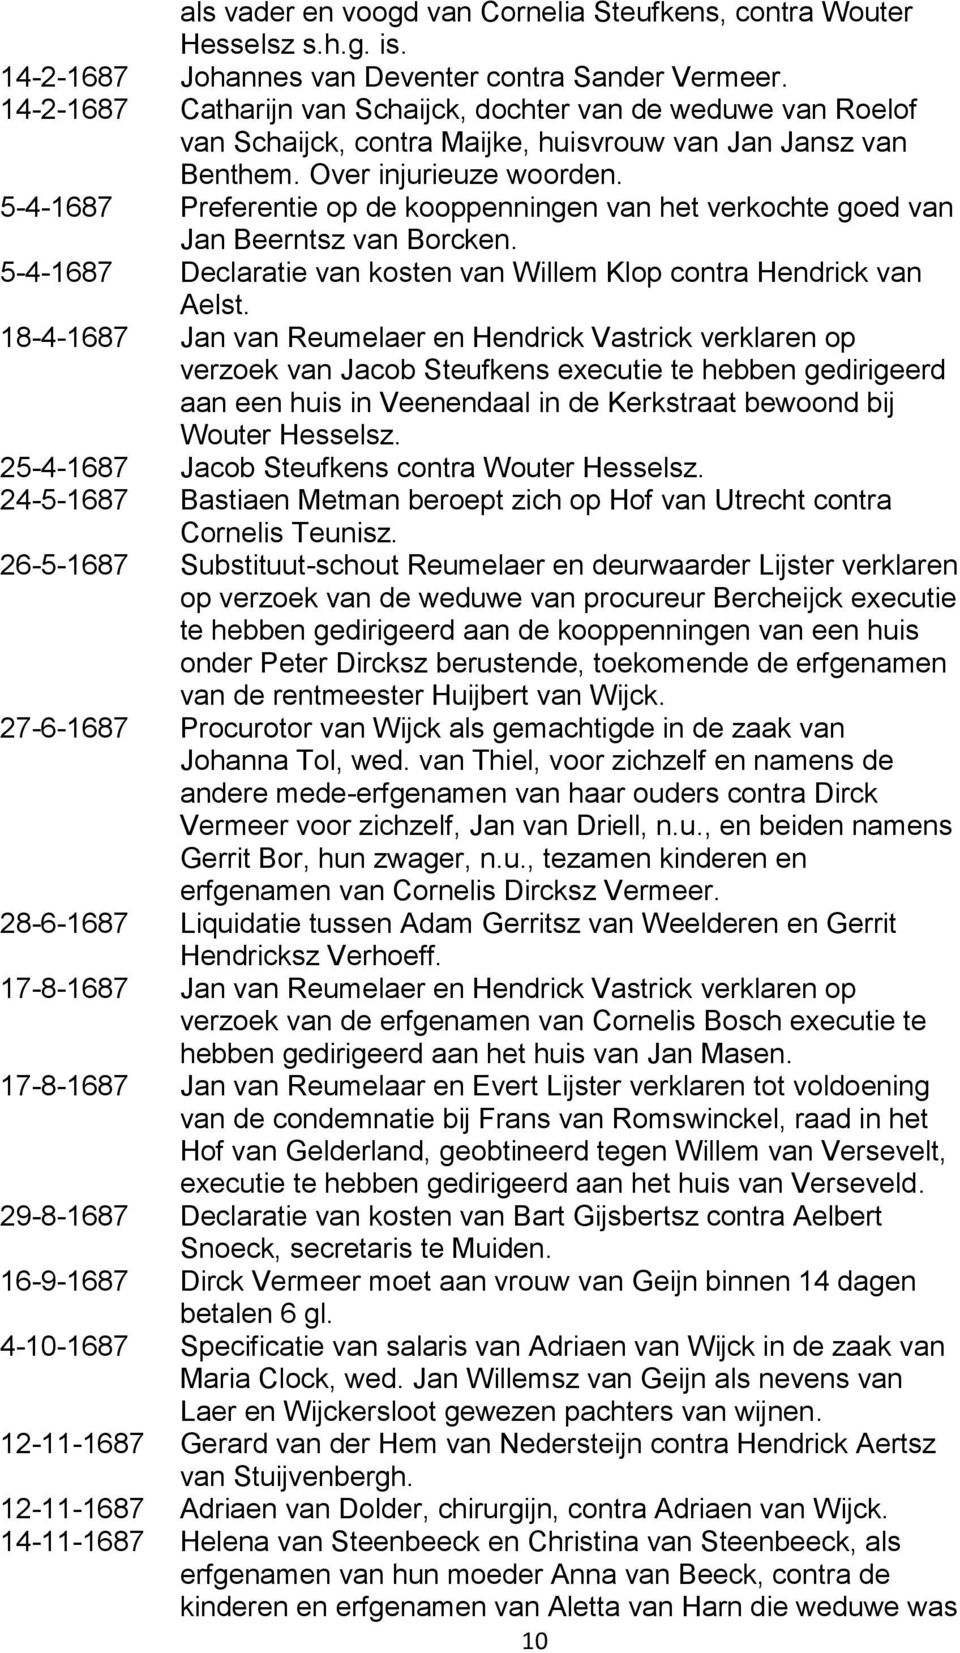 5-4-1687 Preferentie op de kooppenningen van het verkochte goed van Jan Beerntsz van Borcken. 5-4-1687 Declaratie van kosten van Willem Klop contra Hendrick van Aelst.